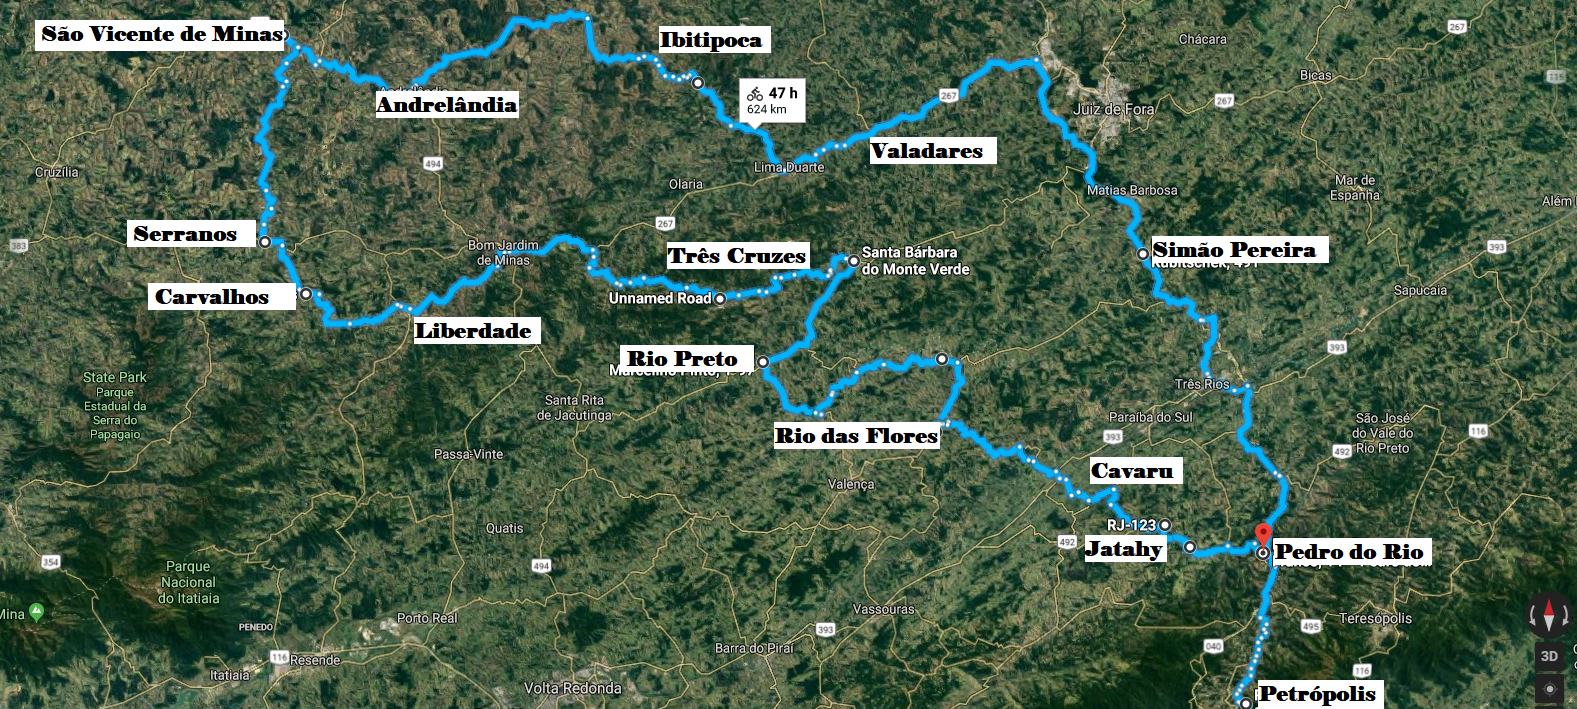 Petrópolis (RJ) - Sul de Minas - Petrópolis (RJ) - Mapa completo